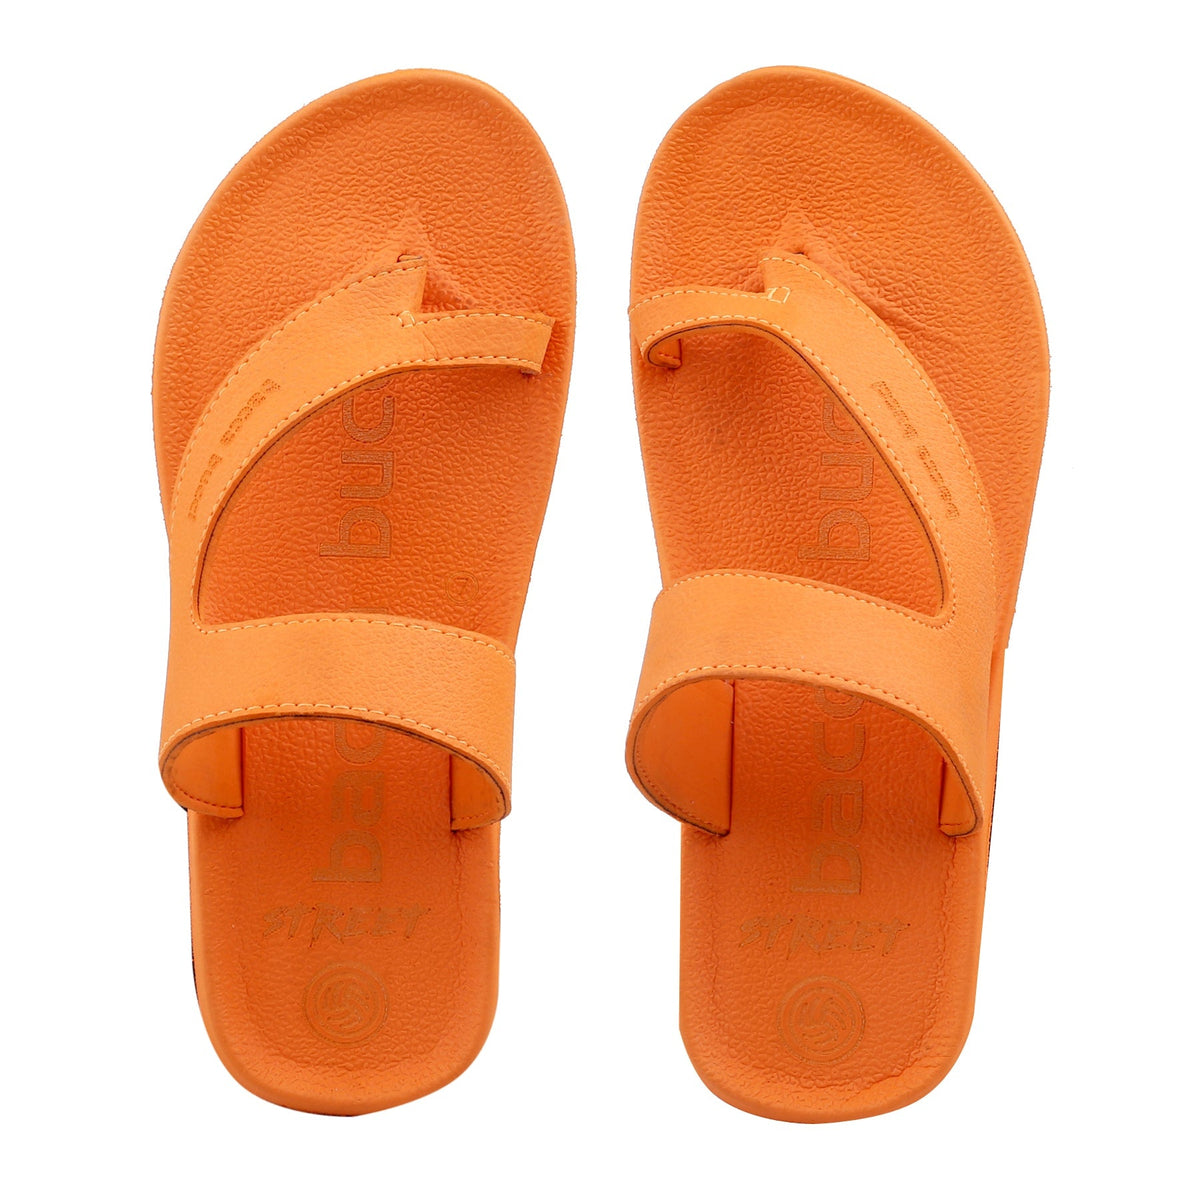 Buy Black Sandals for Men by Birkenstock Online | Ajio.com